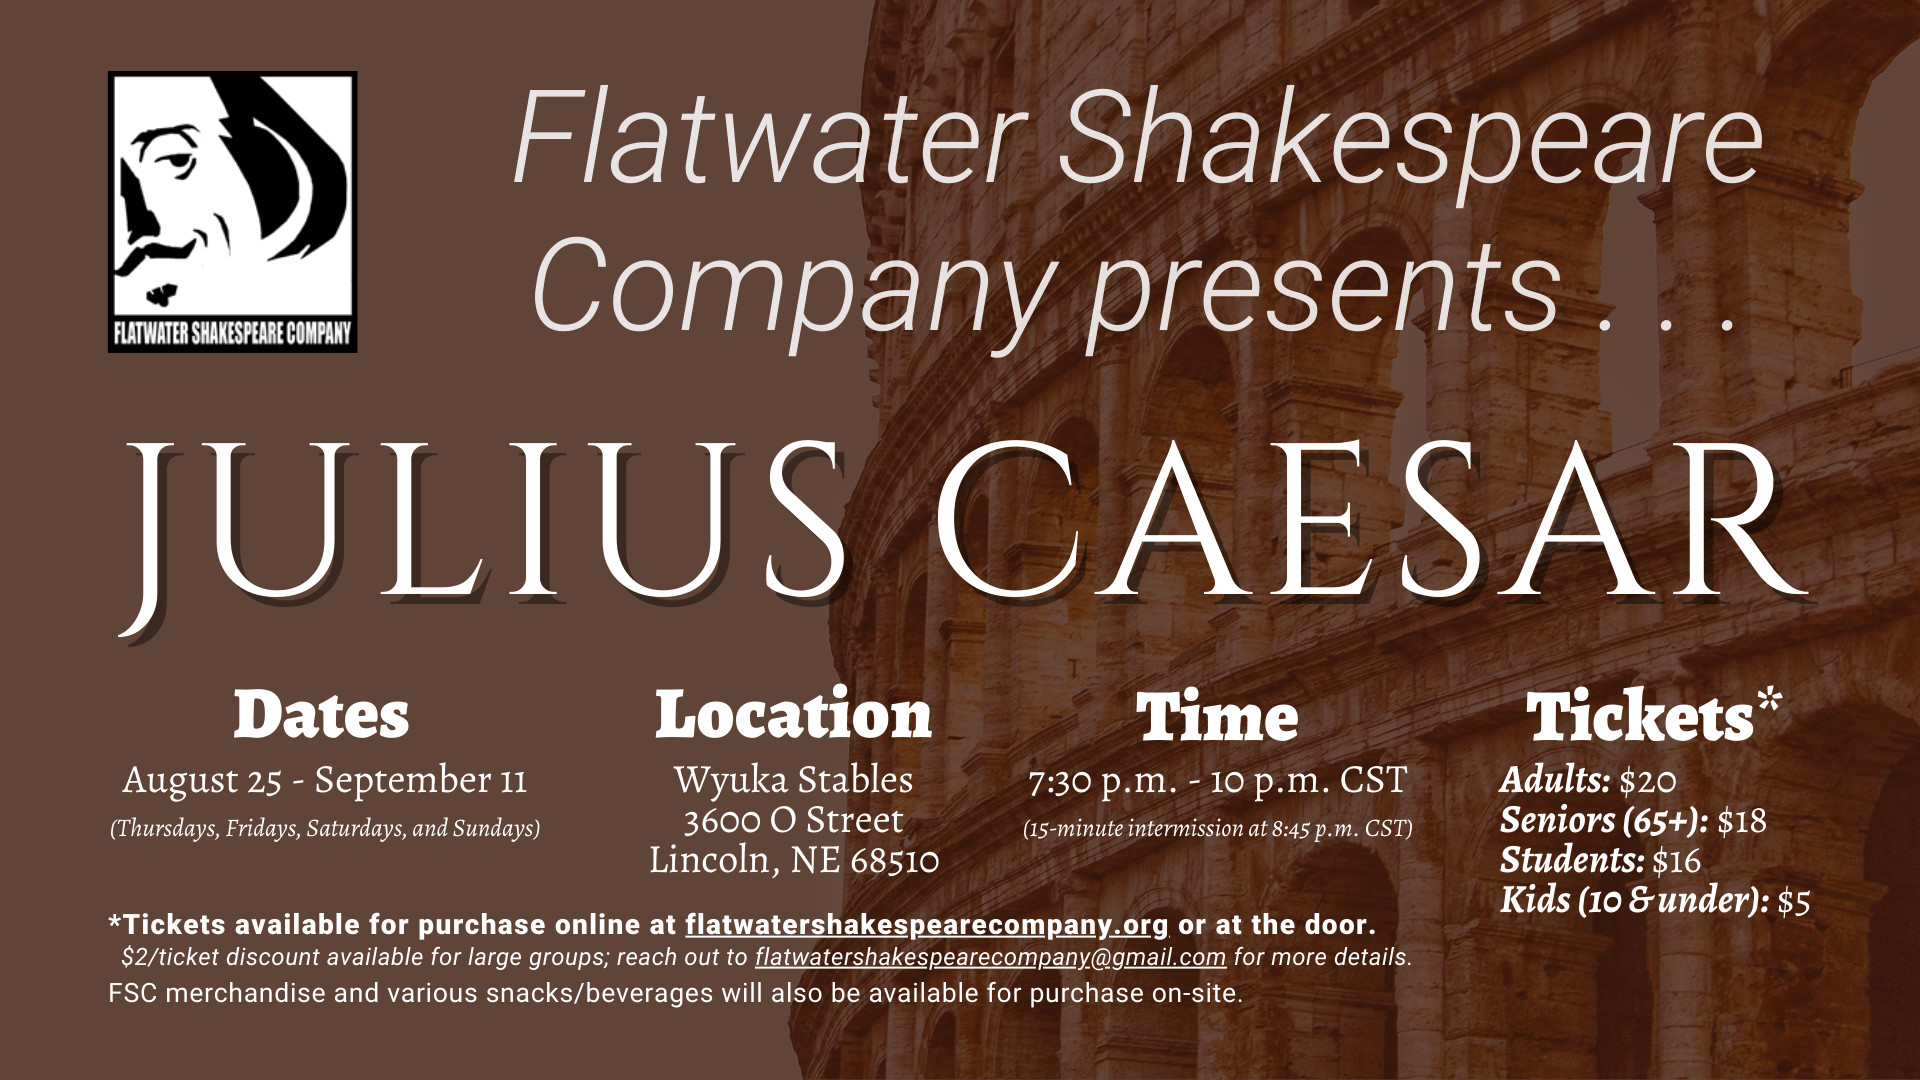 #09STU –– STUDENT: Thurs. Sept. 8, 2022 | 7:30 p.m. - 10 p.m. CST | Wyuka Stables (Julius Caesar)